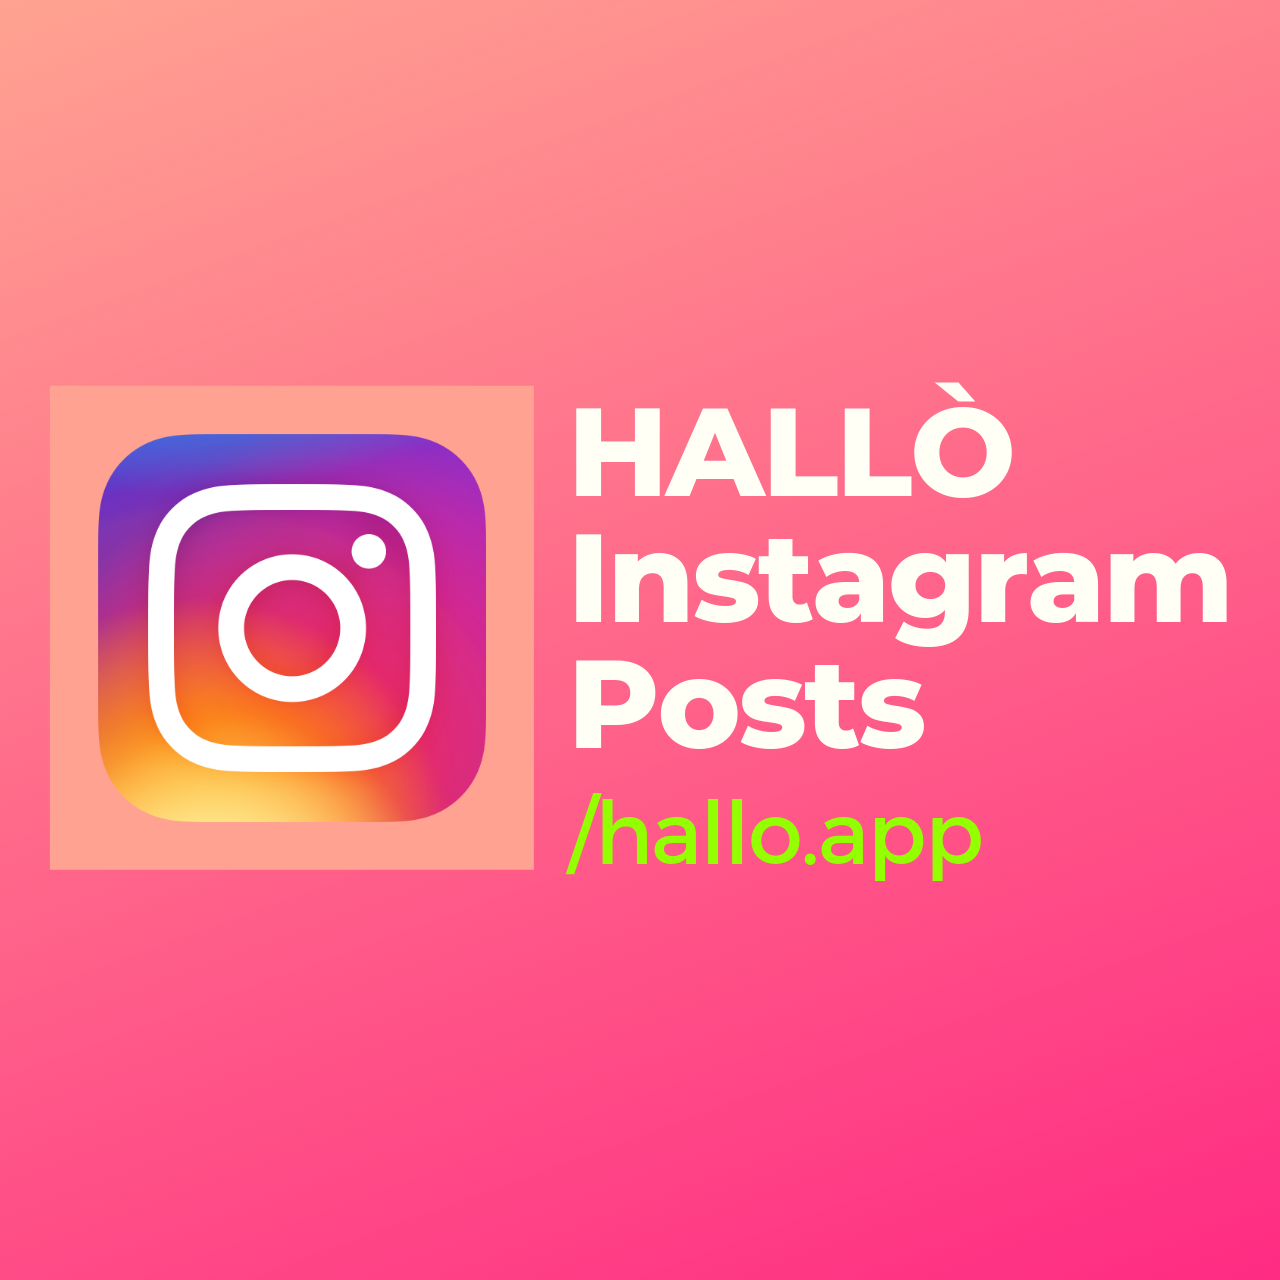 Obtenga más consejos. Síguenos en Instagram /hallo.app